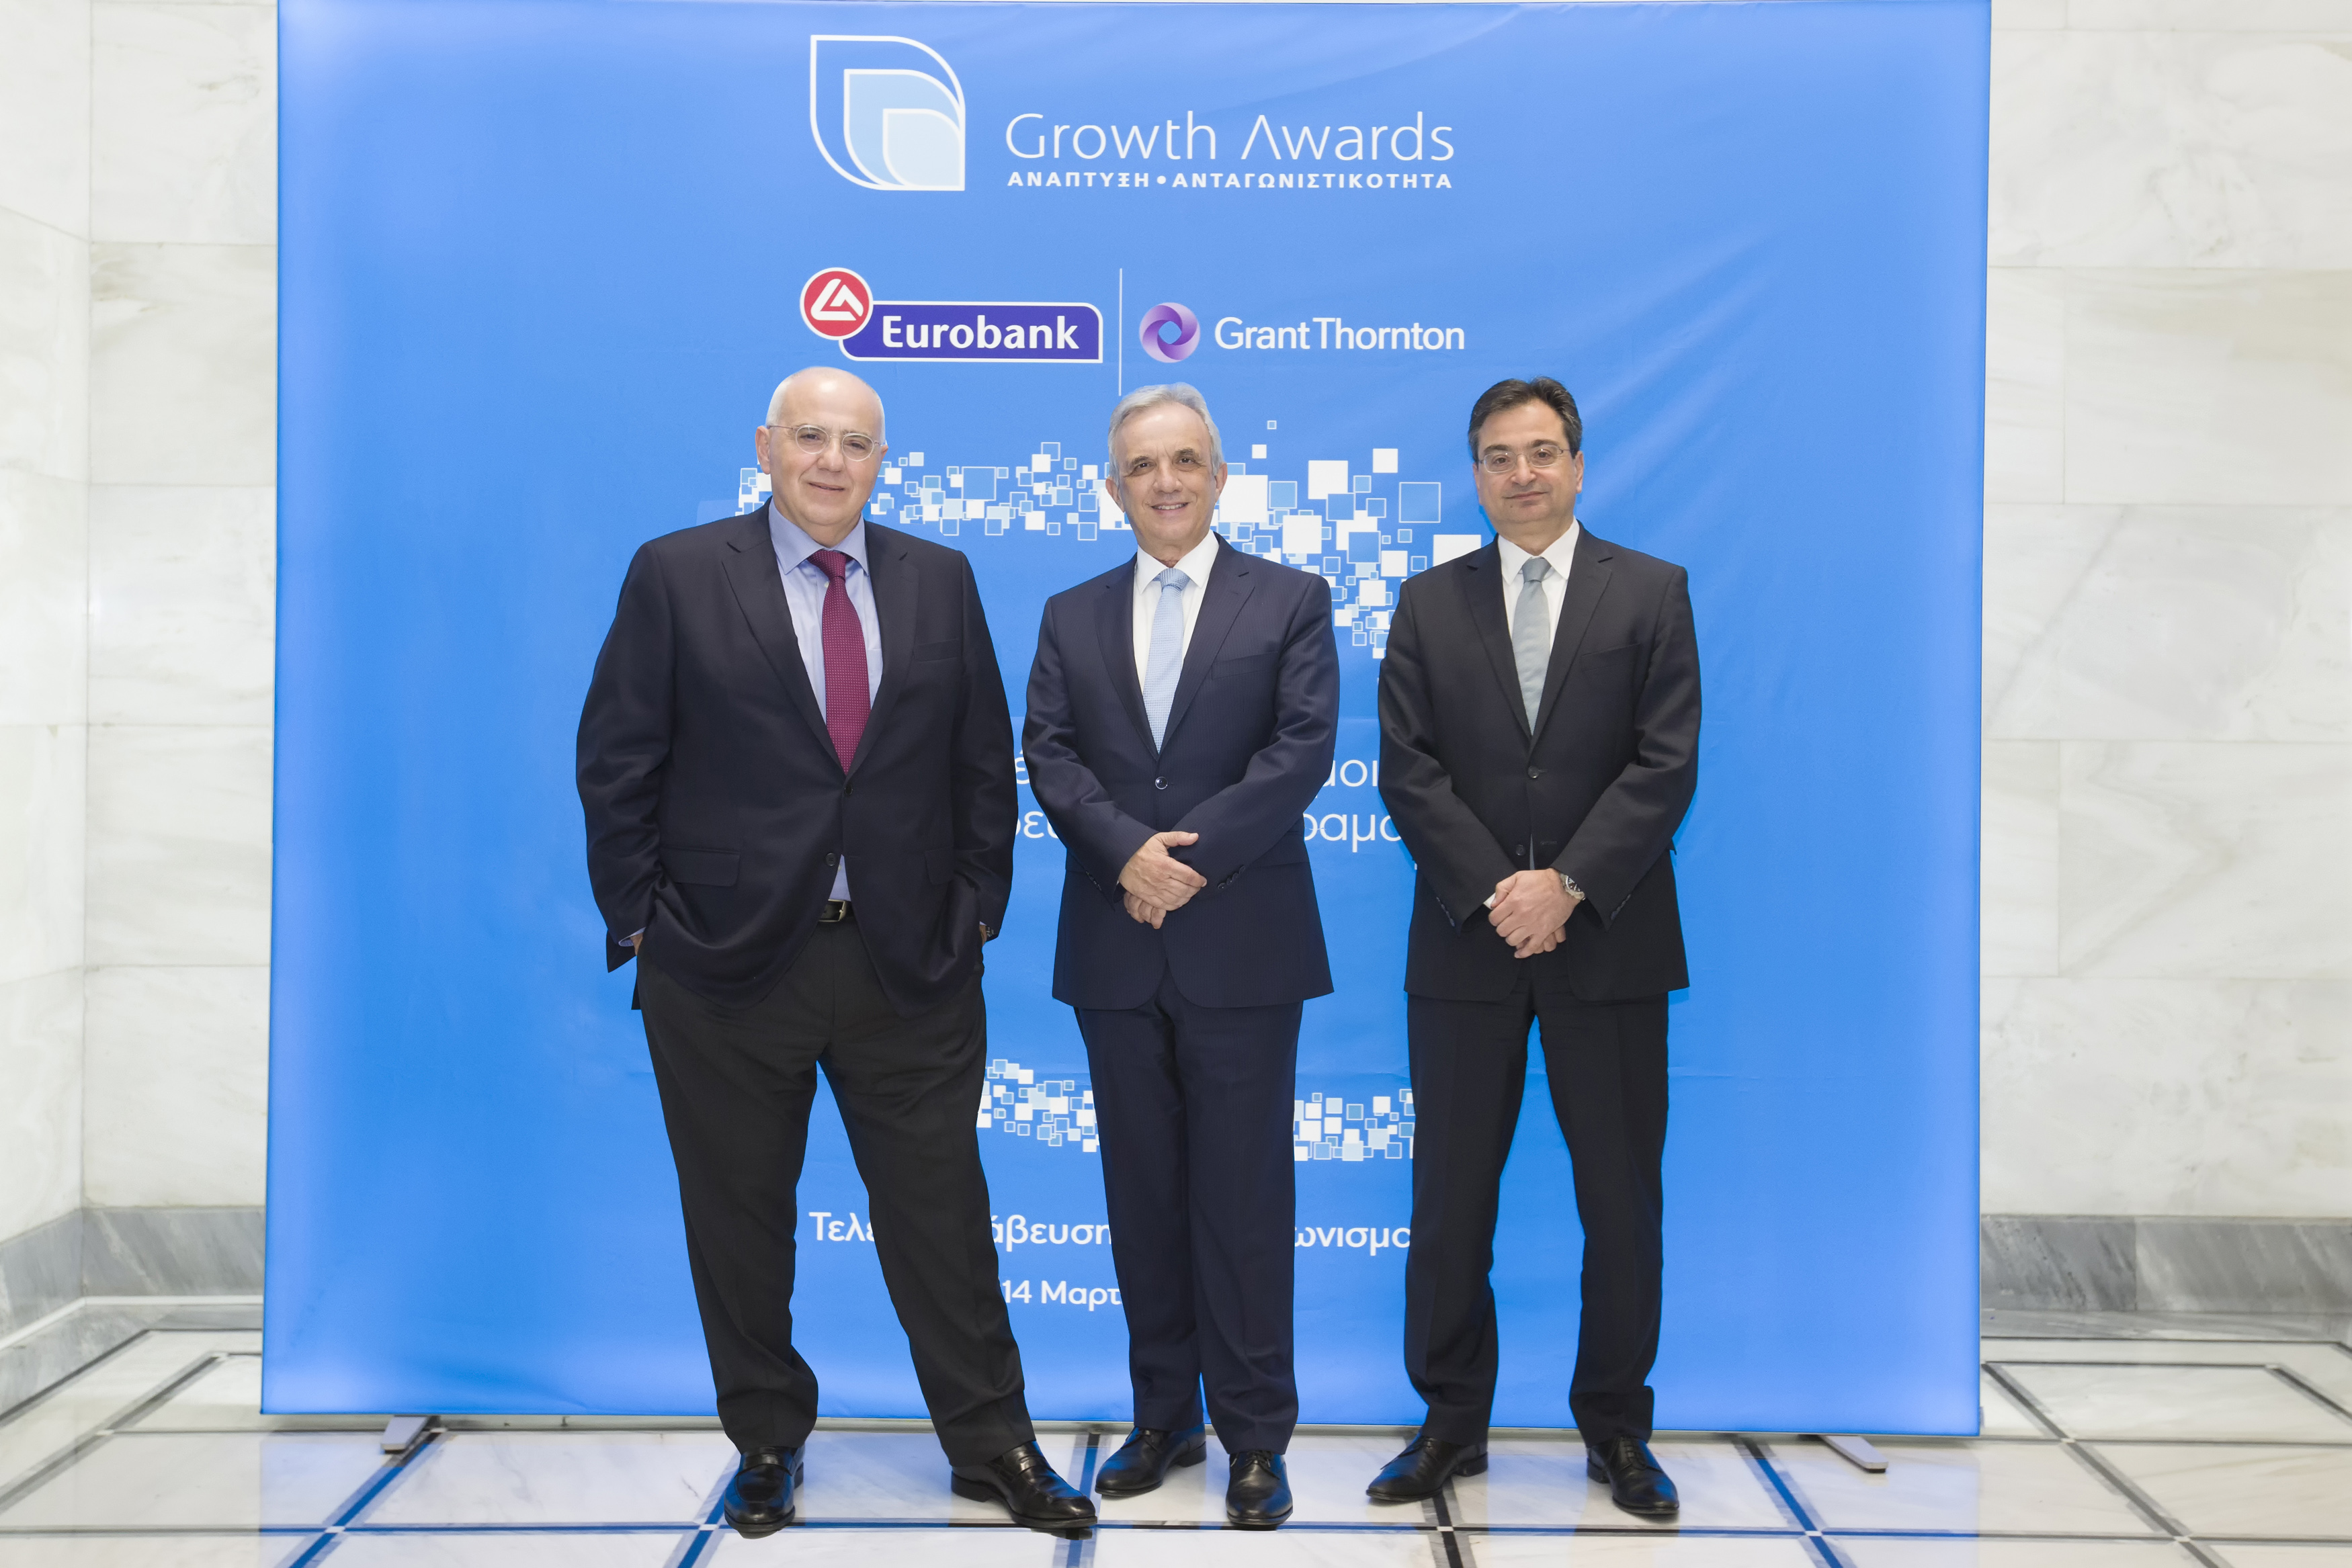 Growth Awards 2019: Eurobank και Grant Thornton επιβράβευσαν την επιχειρηματική αριστεία